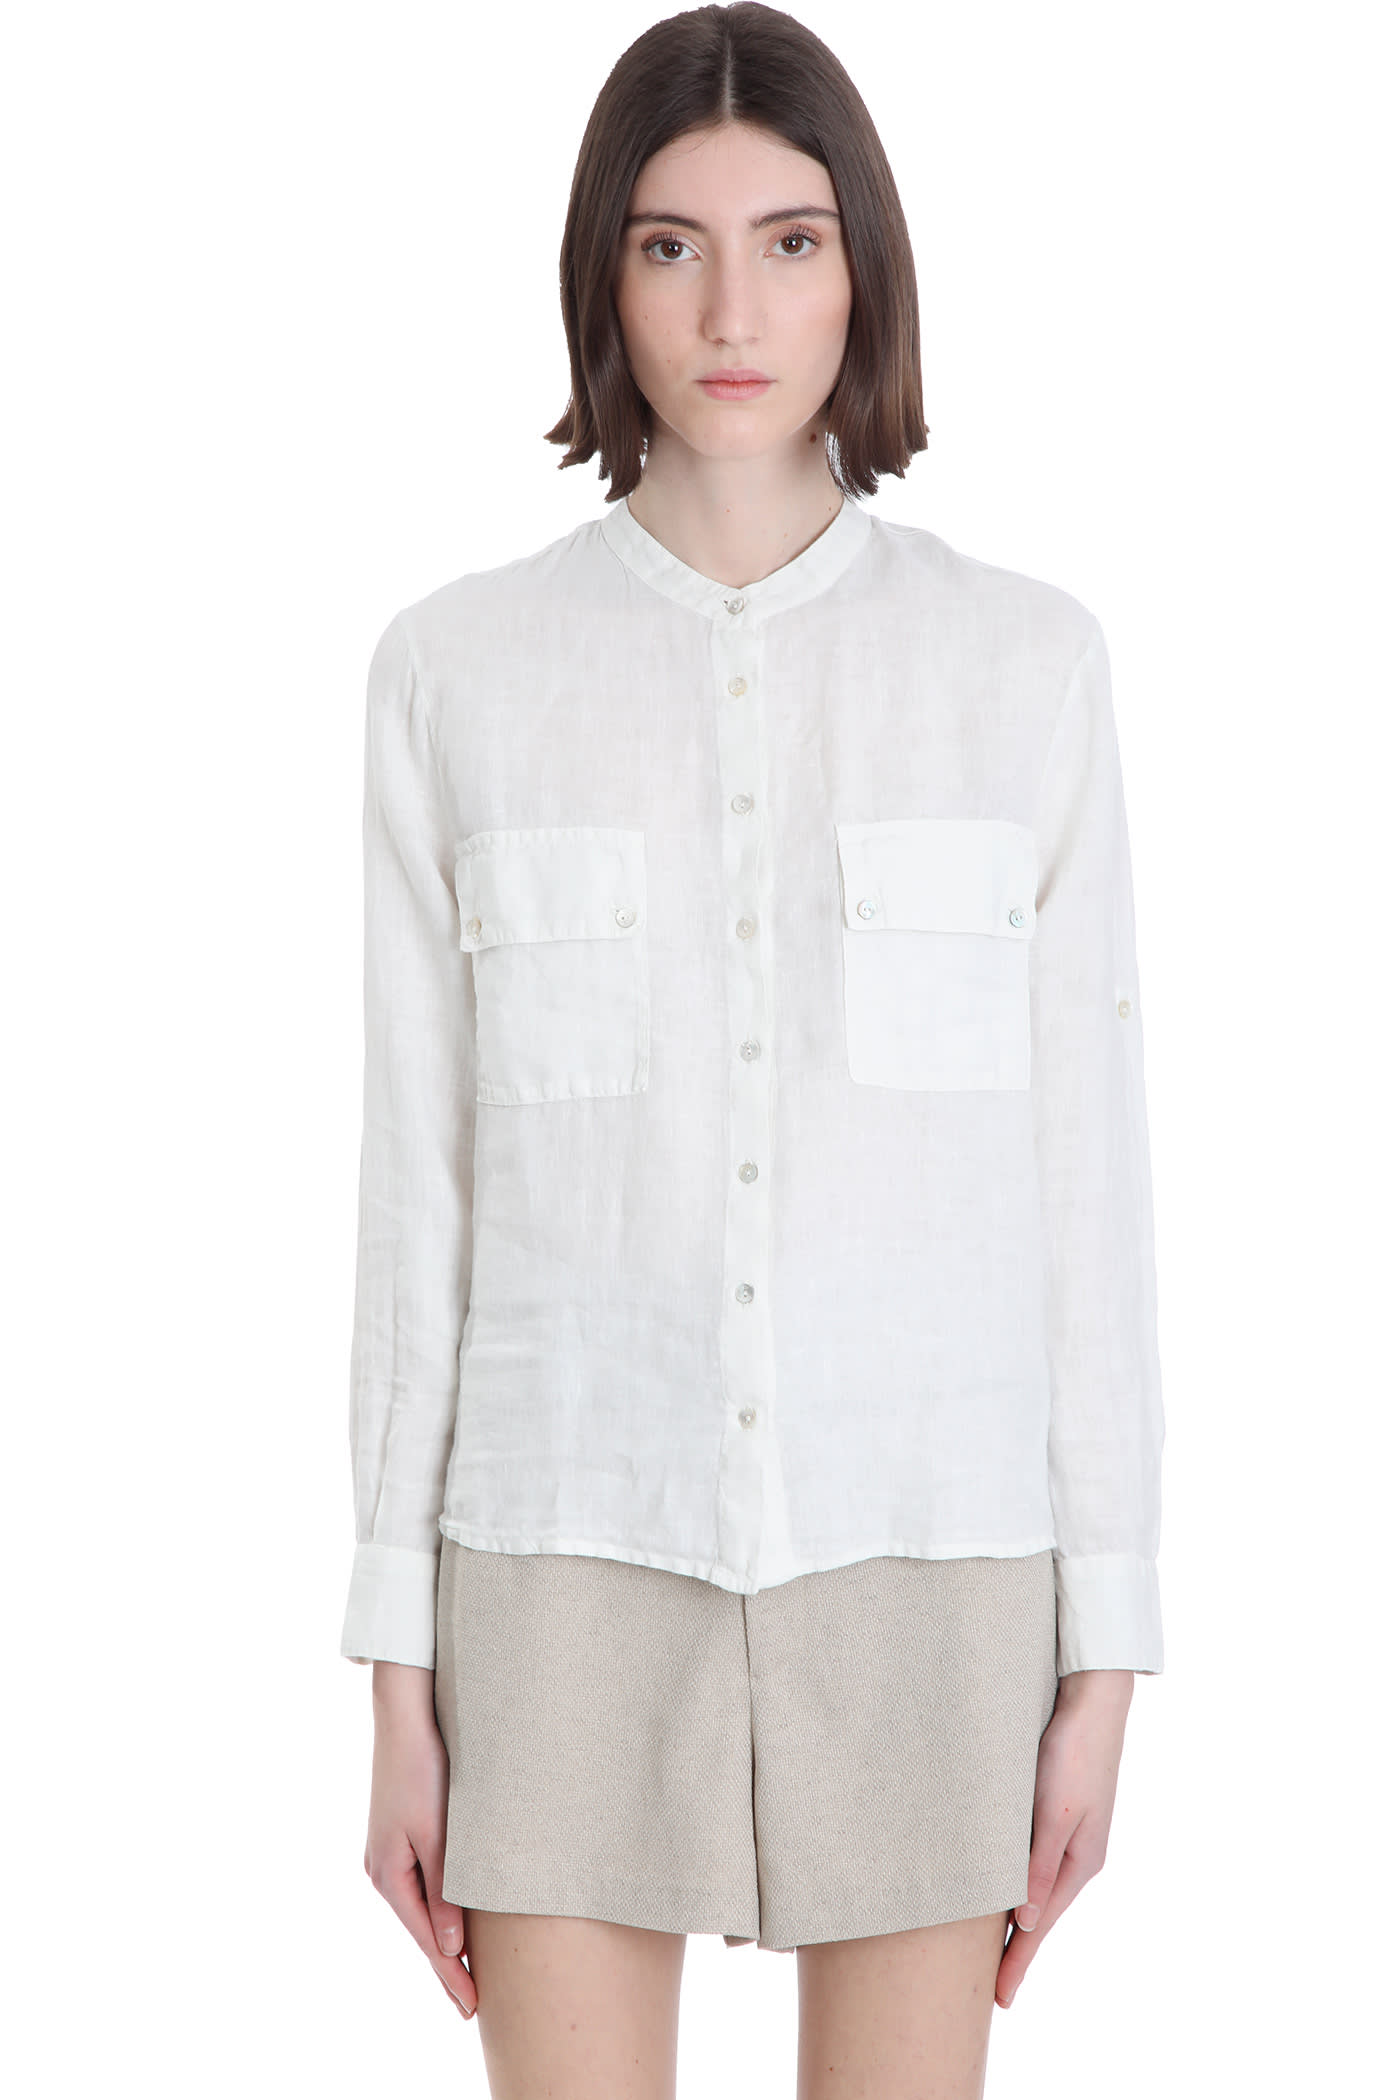 120 Lino - 120% lino shirt in white linen